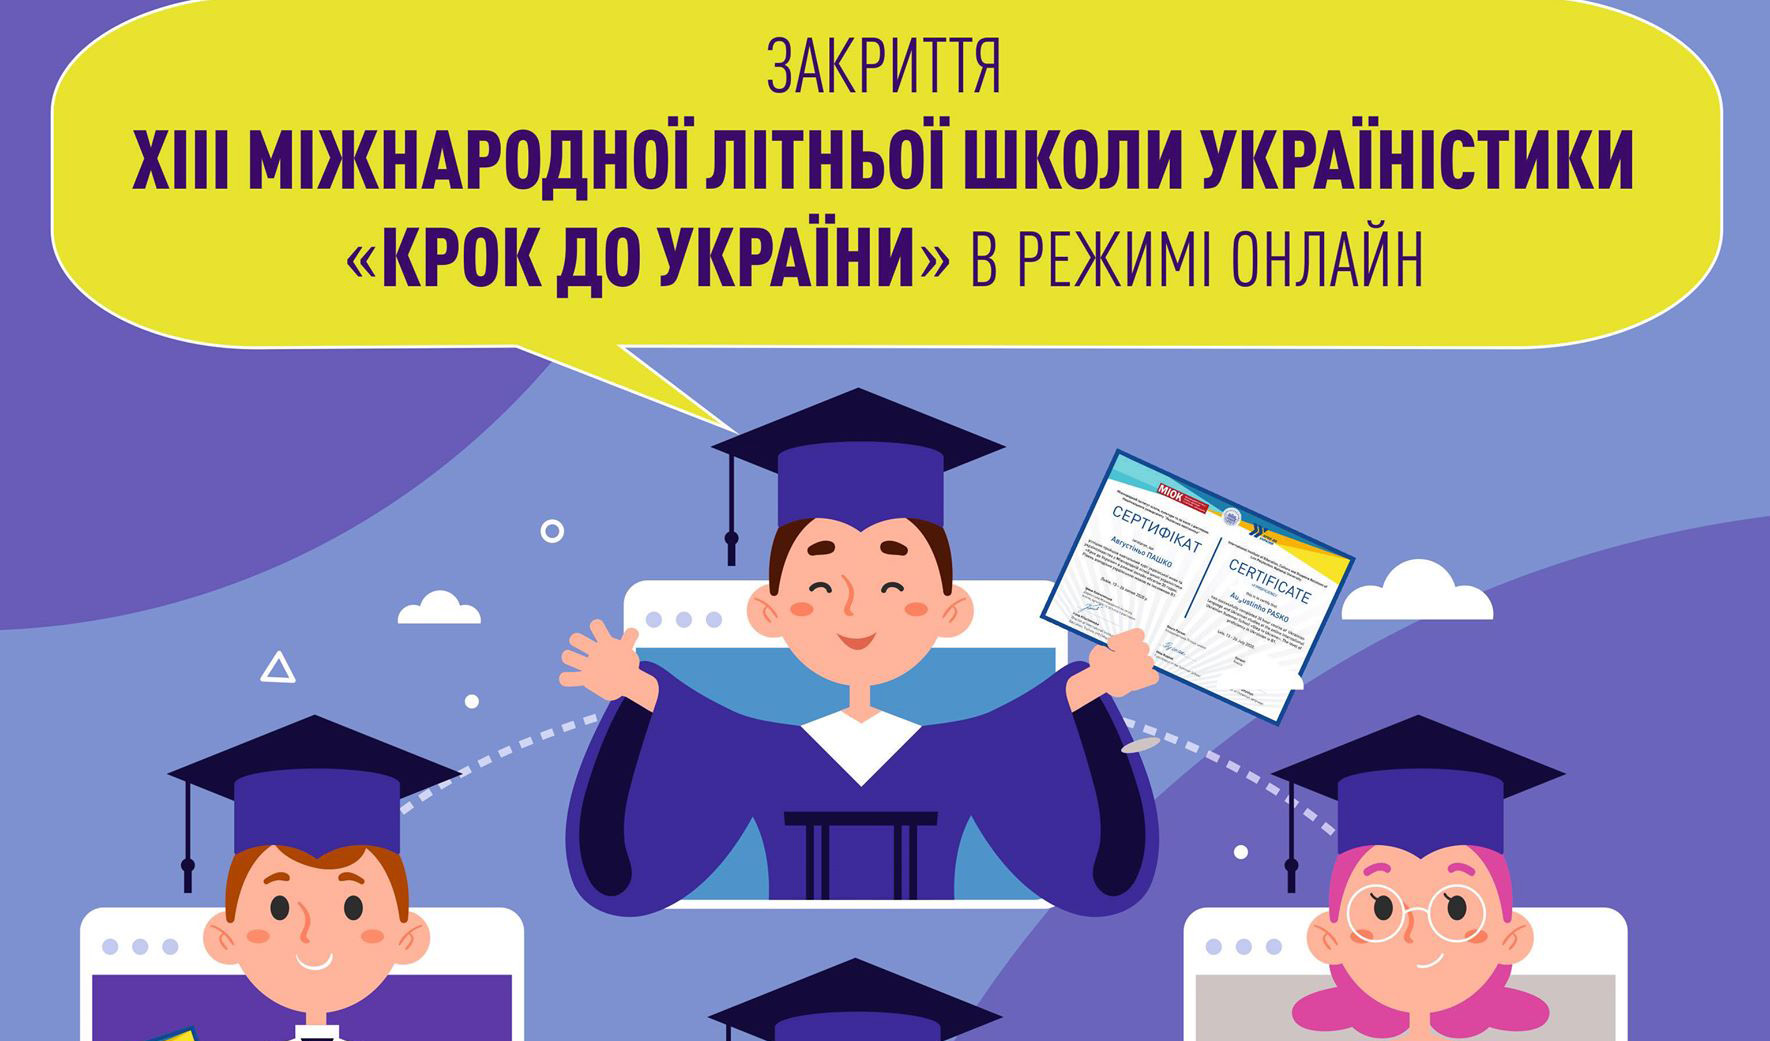 Закриття ХІІІ Міжнародної літньої школи україністики «Крок до України» в режимі онлайн